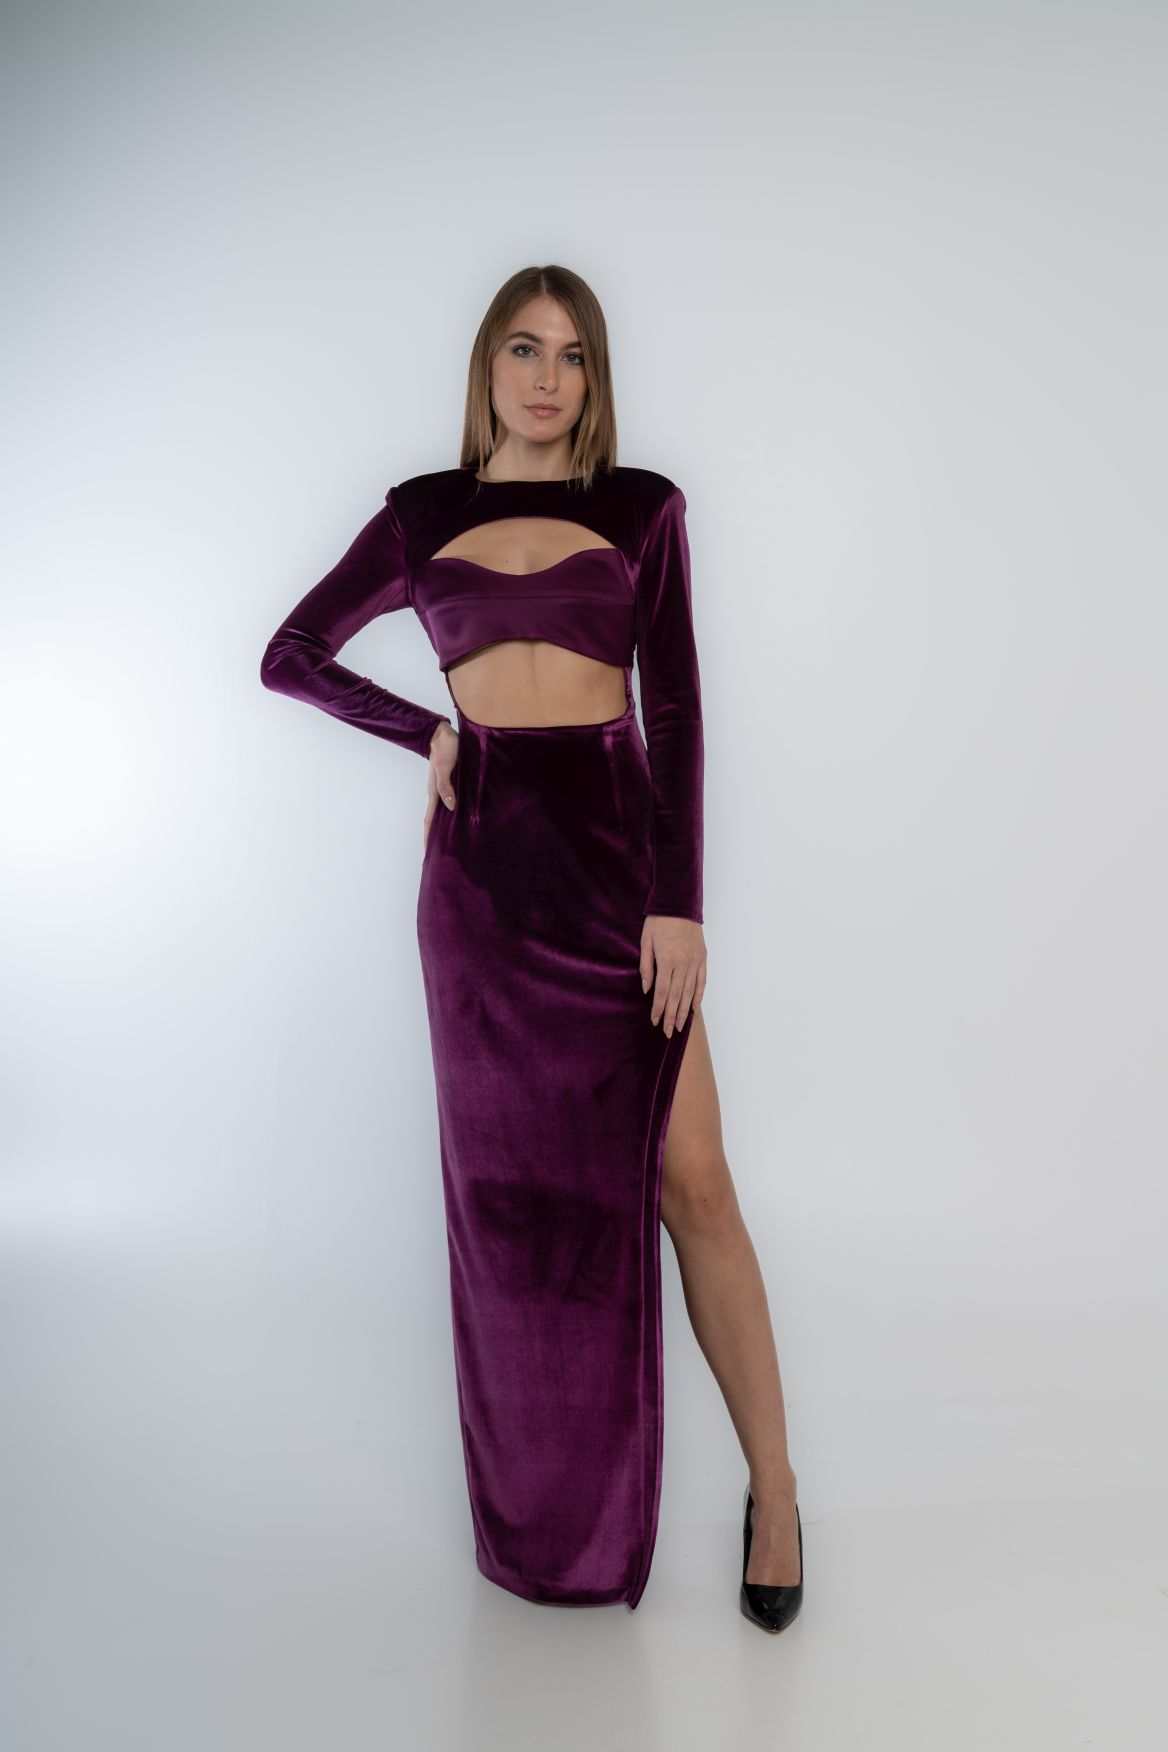 Velvet dress with basque